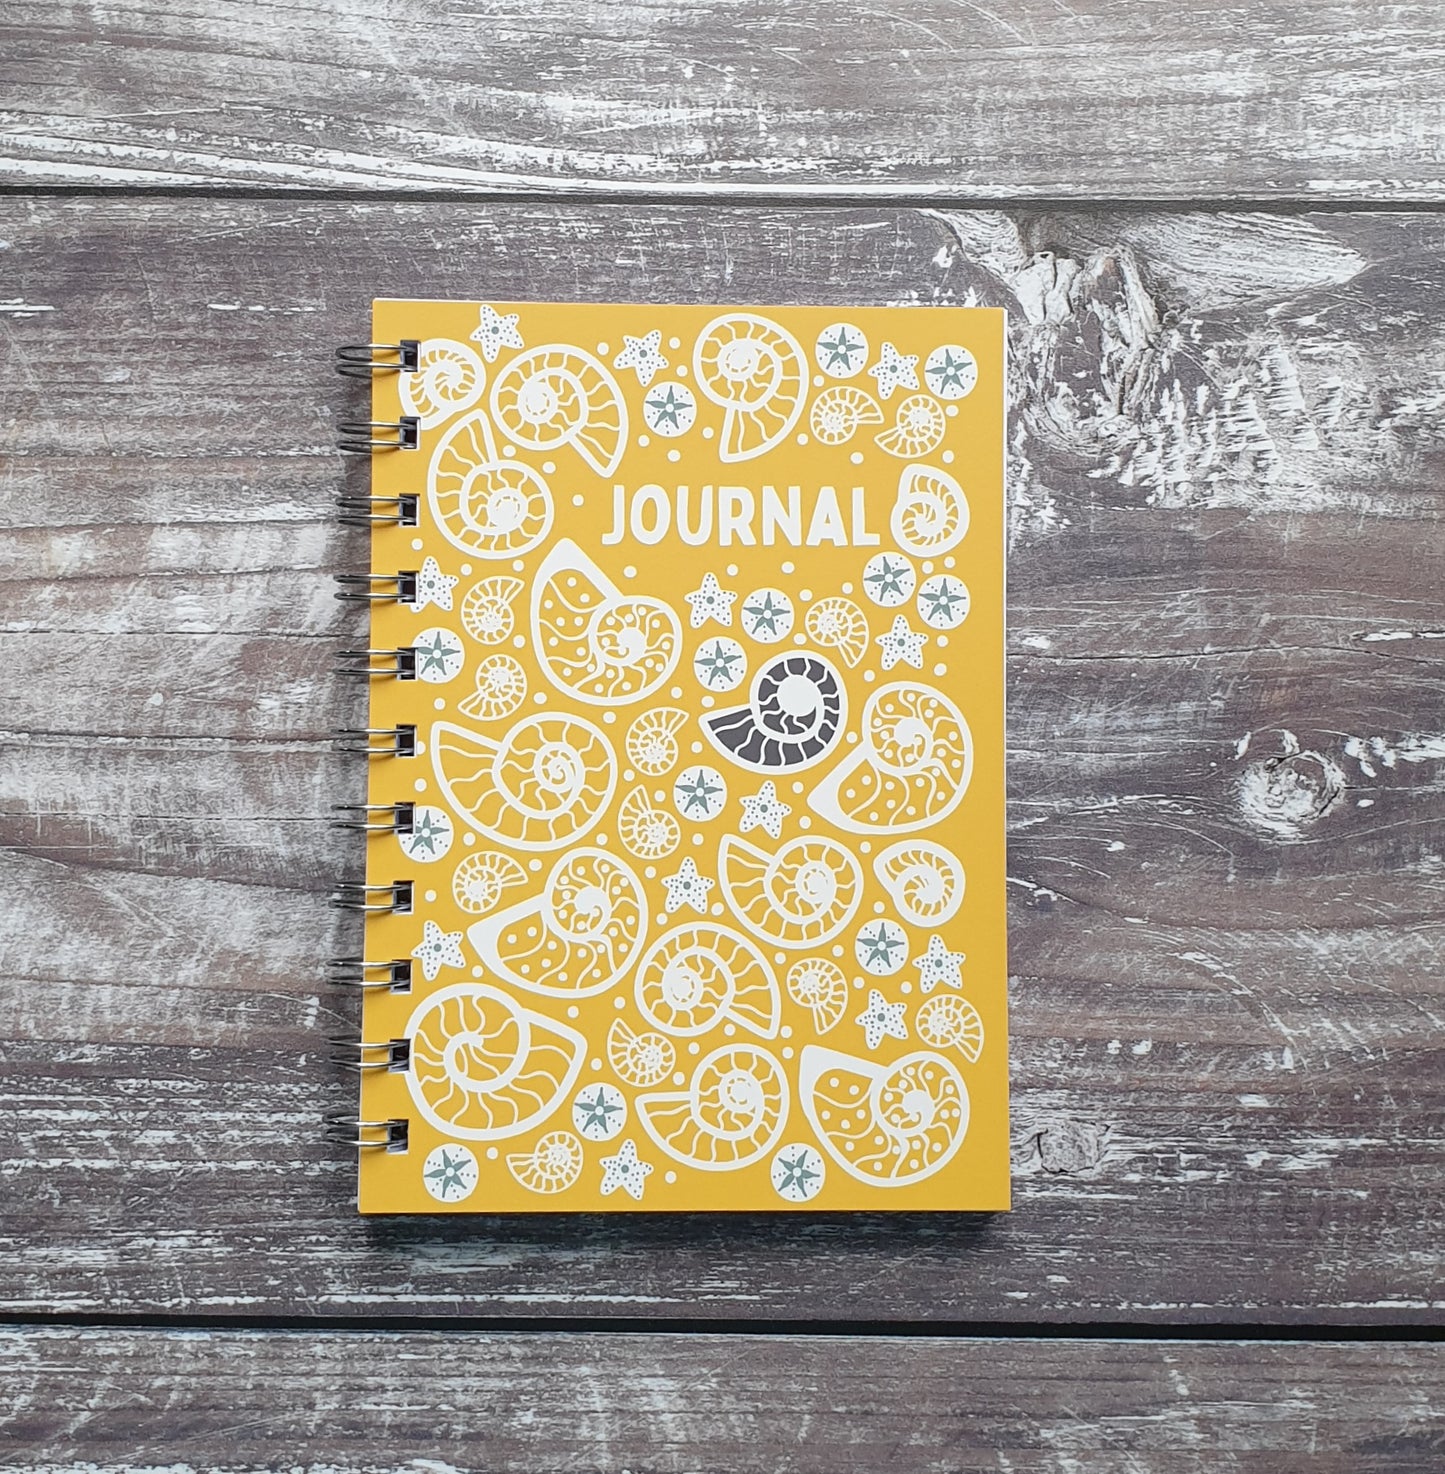 Fossil Beach Journal - Yellow Notebooks